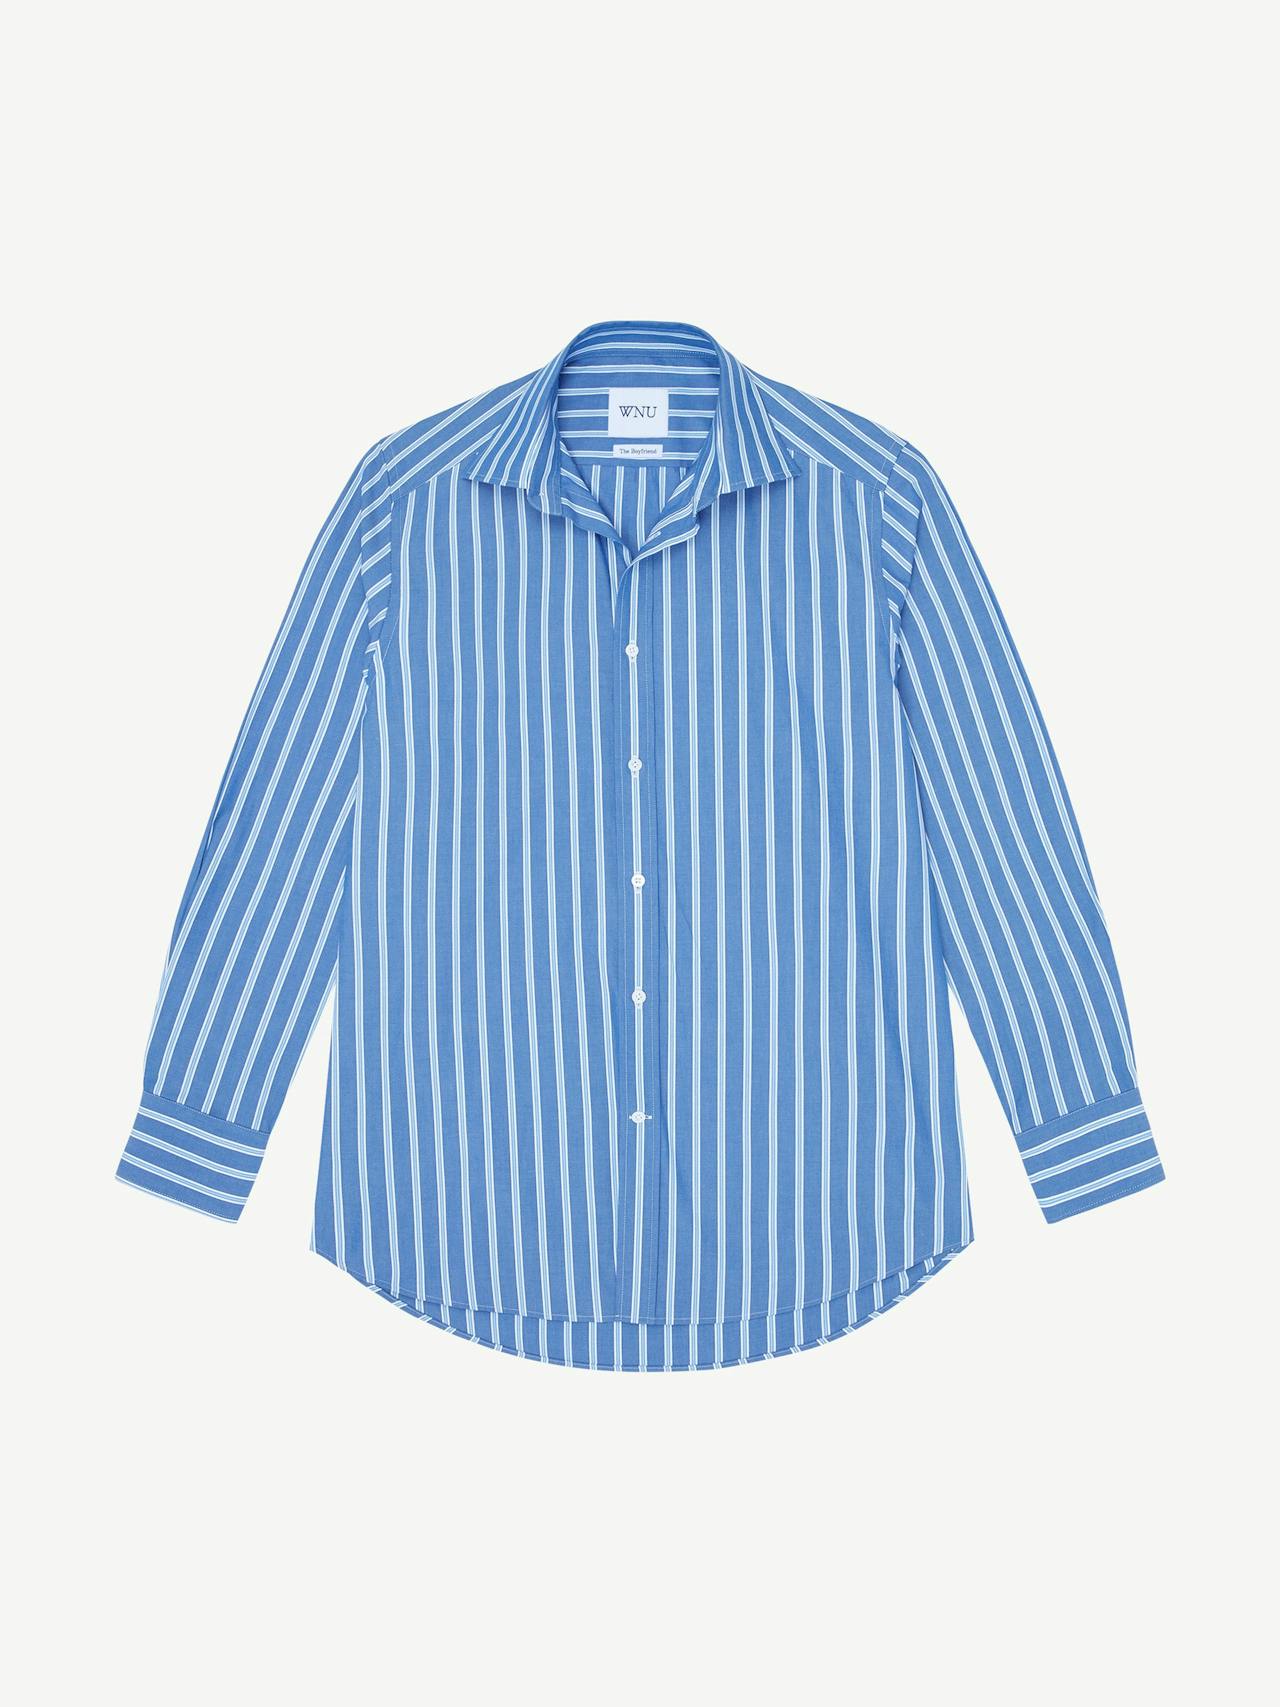 The Blue Multi Stripe fine poplin Boyfriend shirt